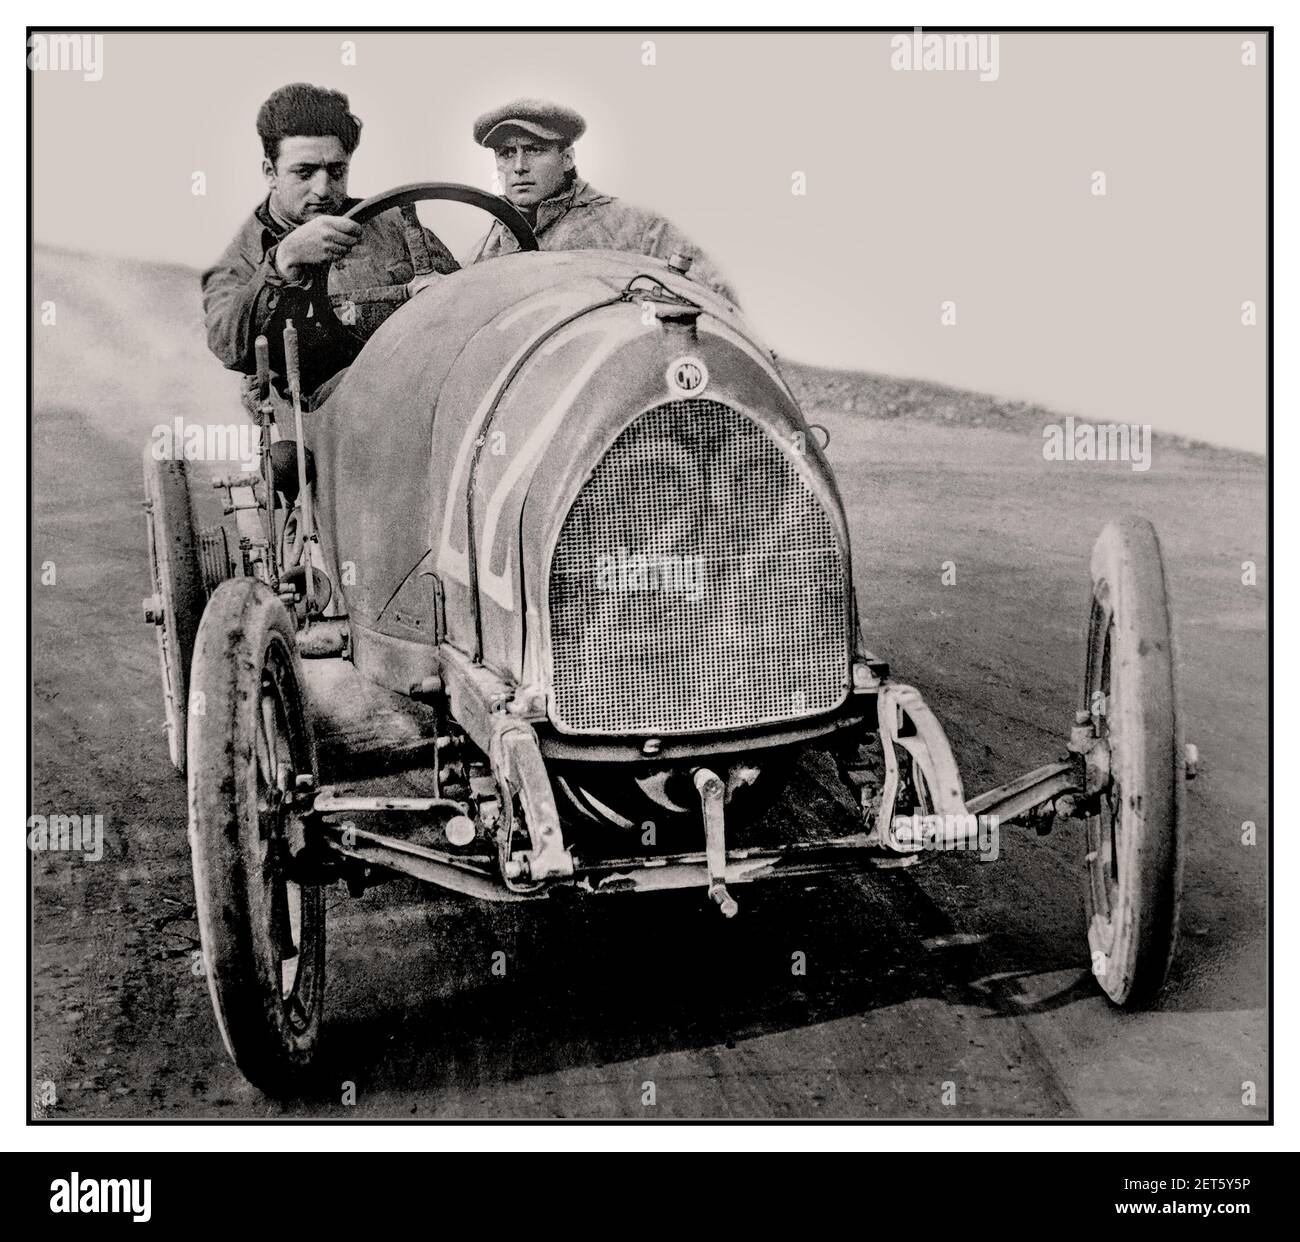 ENZO FERRARI Archive Vintage 1919 imagen de un joven Enzo Ferrari en su primera carrera como piloto profesional en No,22 C.M.N. (Costruzioni Meccaniche Nazionali) Parma-Poggio di Berceto carrera de escalada 1919 Foto de stock